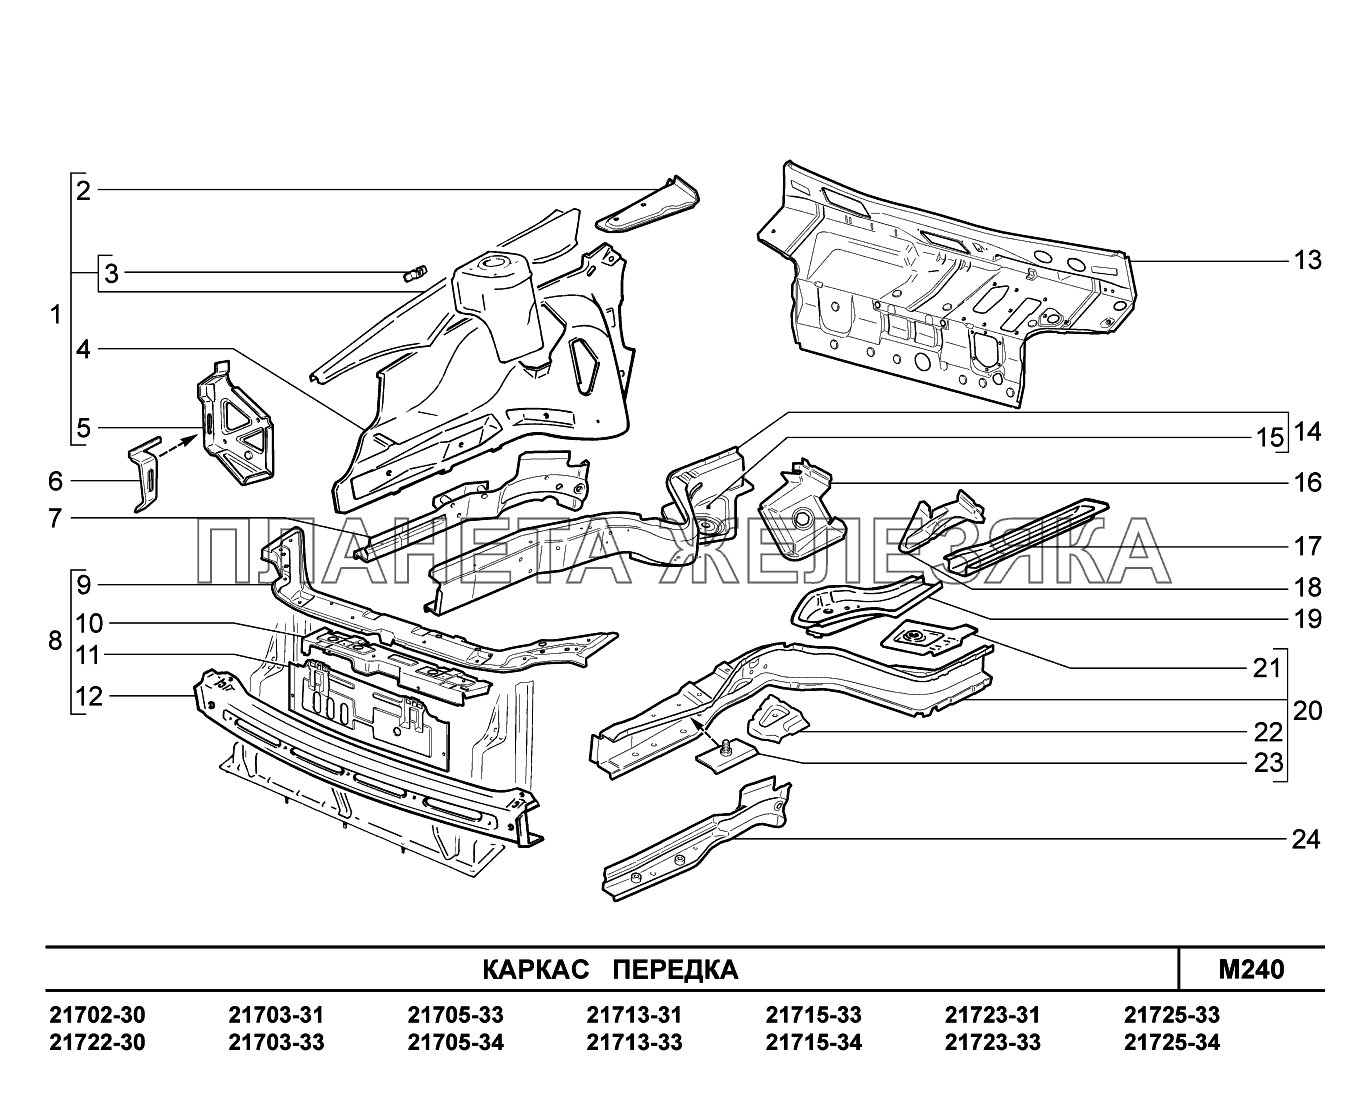 M240. Каркас передка ВАЗ-2170 